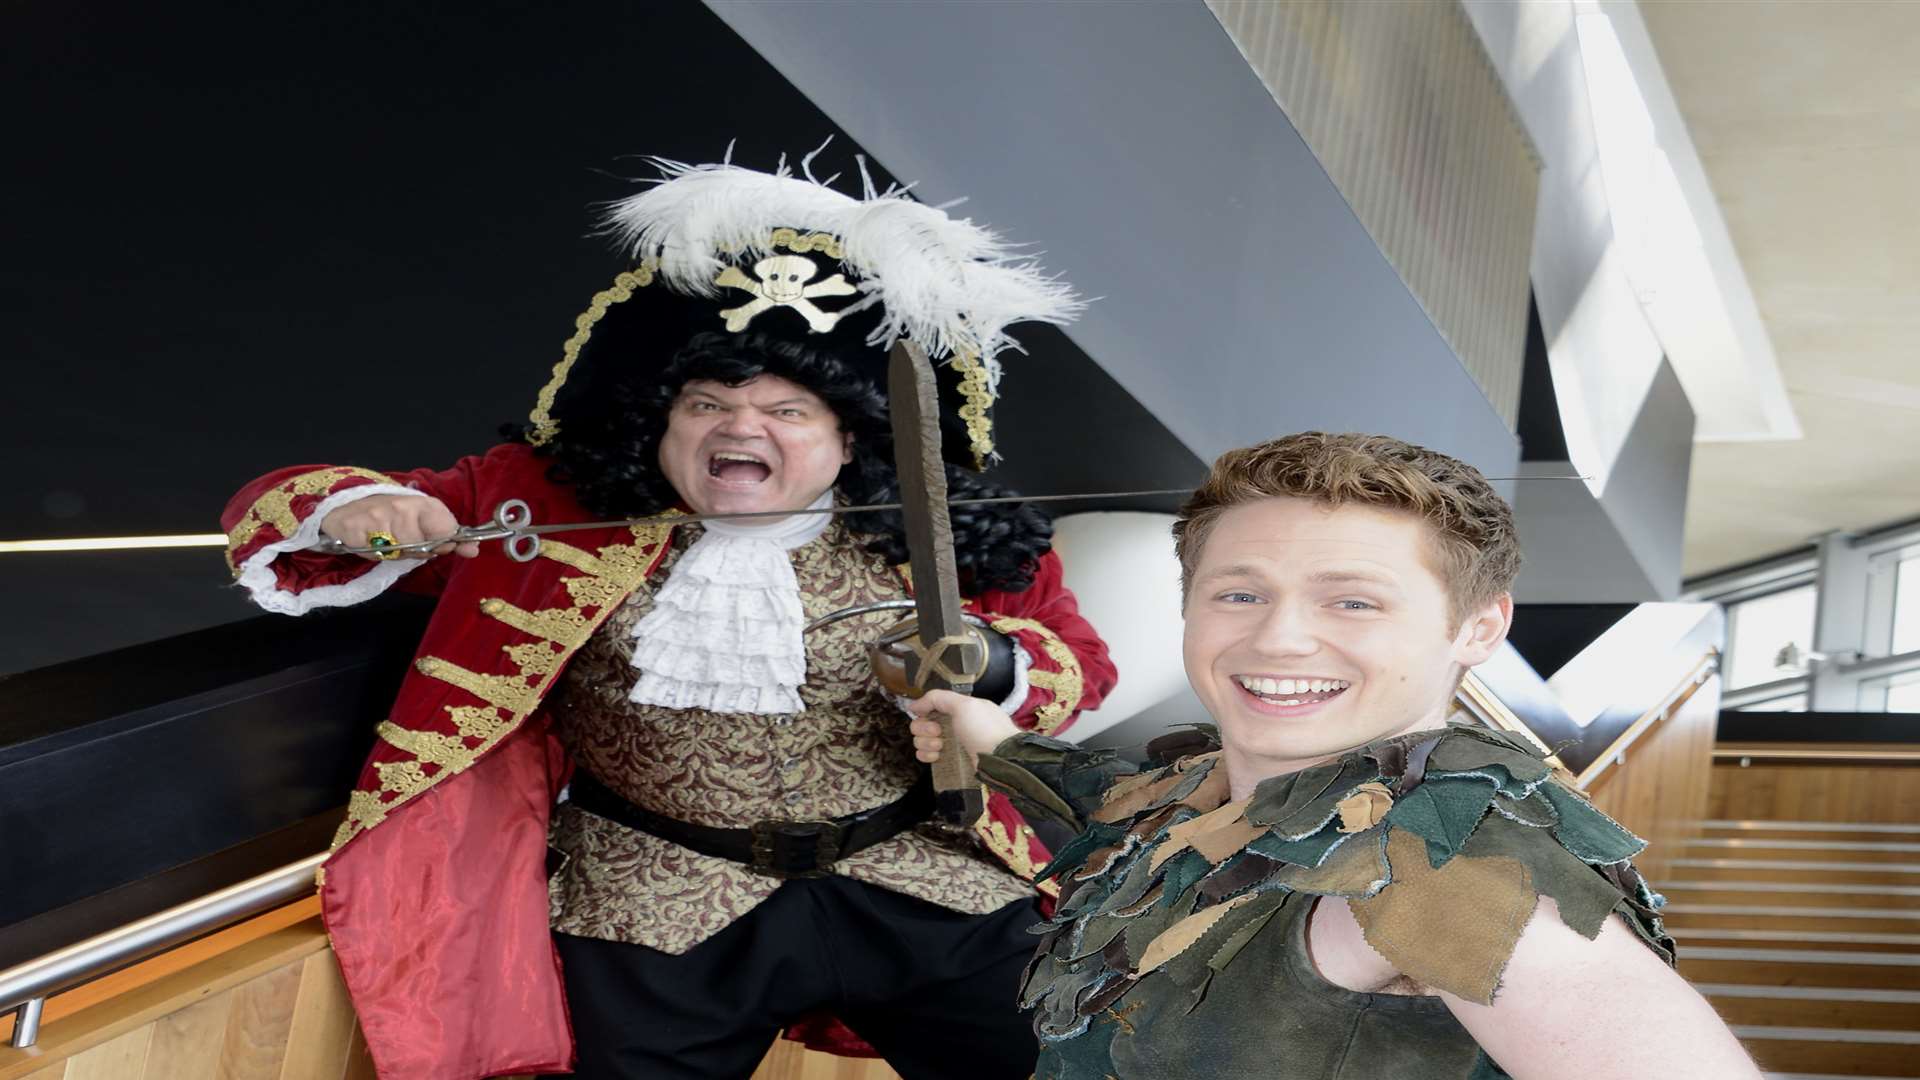 Shaun Williamson as Captain Hook crosses swords with Milkshake's David Ribi as Peter Pan Picture: Paul Amos